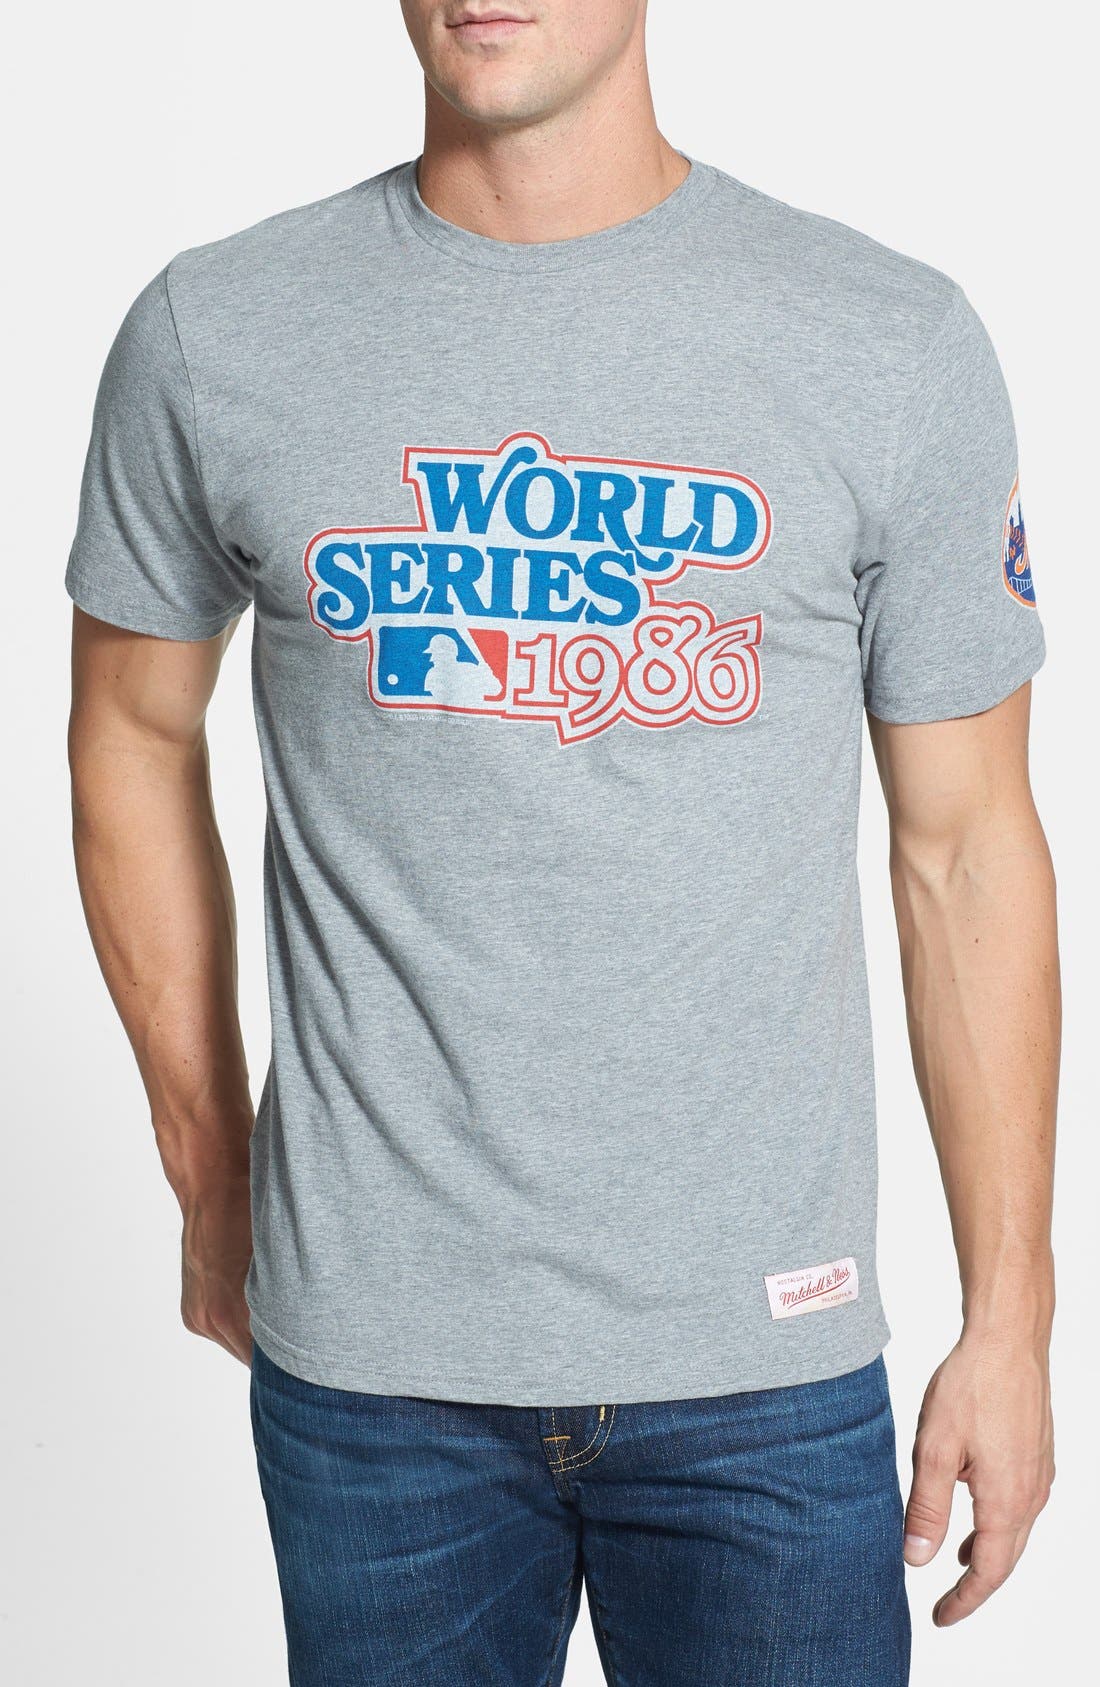 mets world series t shirt